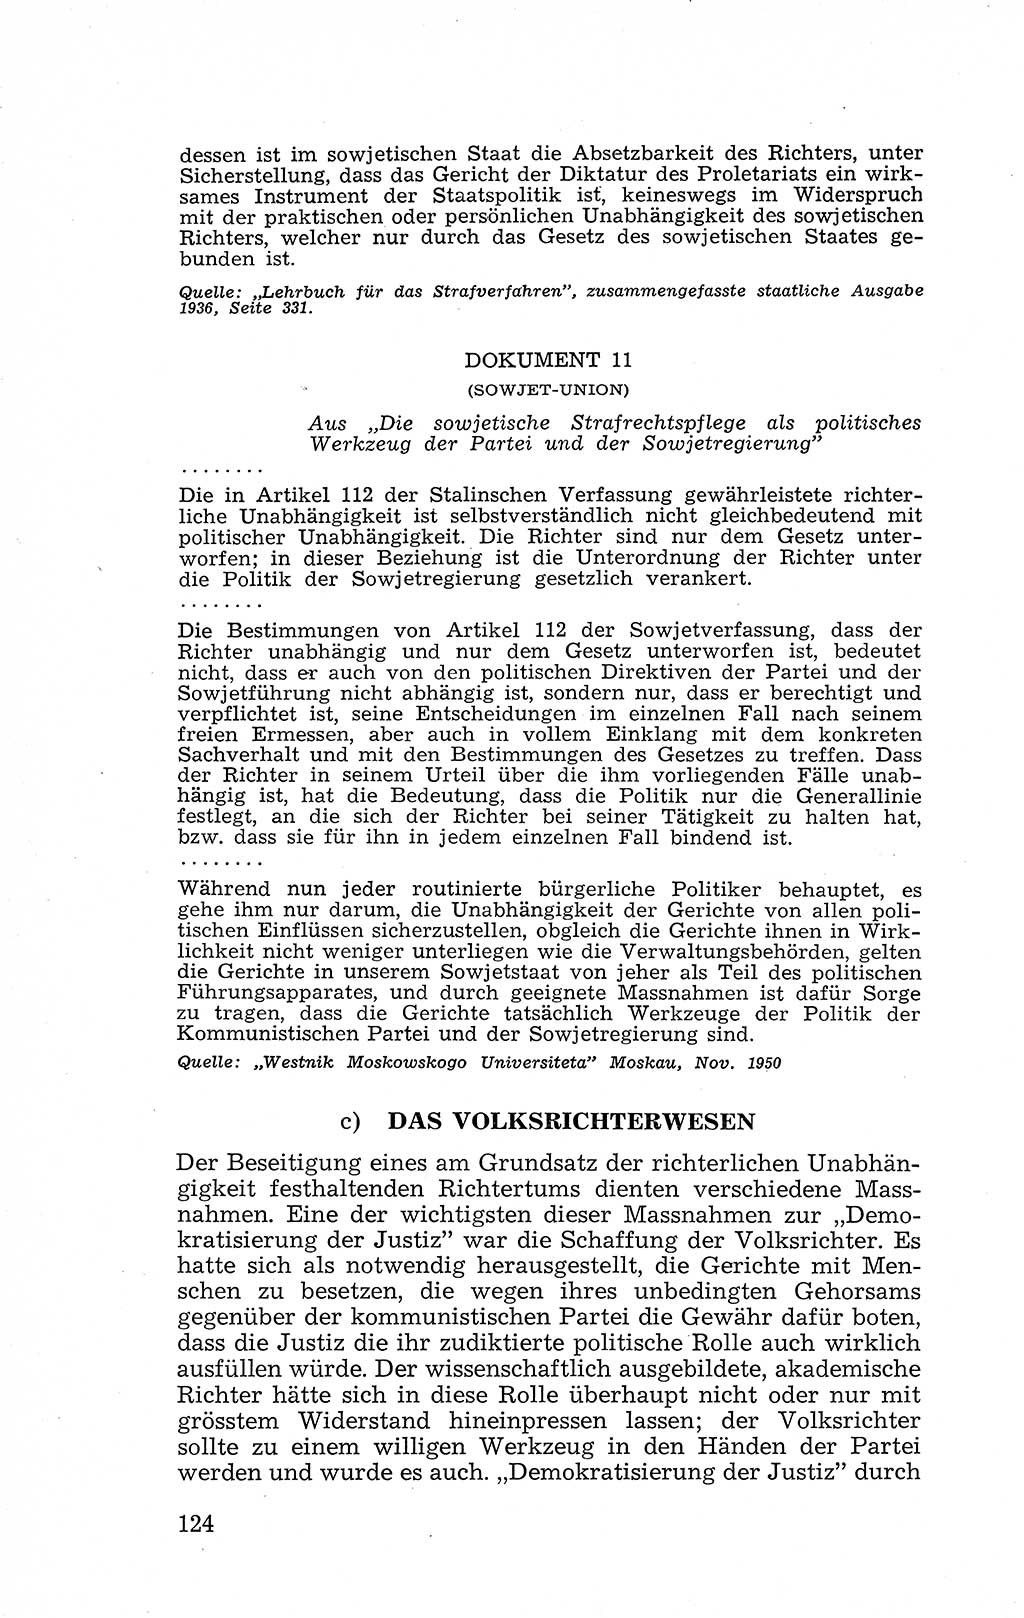 Recht in Fesseln, Dokumente, Internationale Juristen-Kommission [Bundesrepublik Deutschland (BRD)] 1955, Seite 124 (R. Dok. IJK BRD 1955, S. 124)